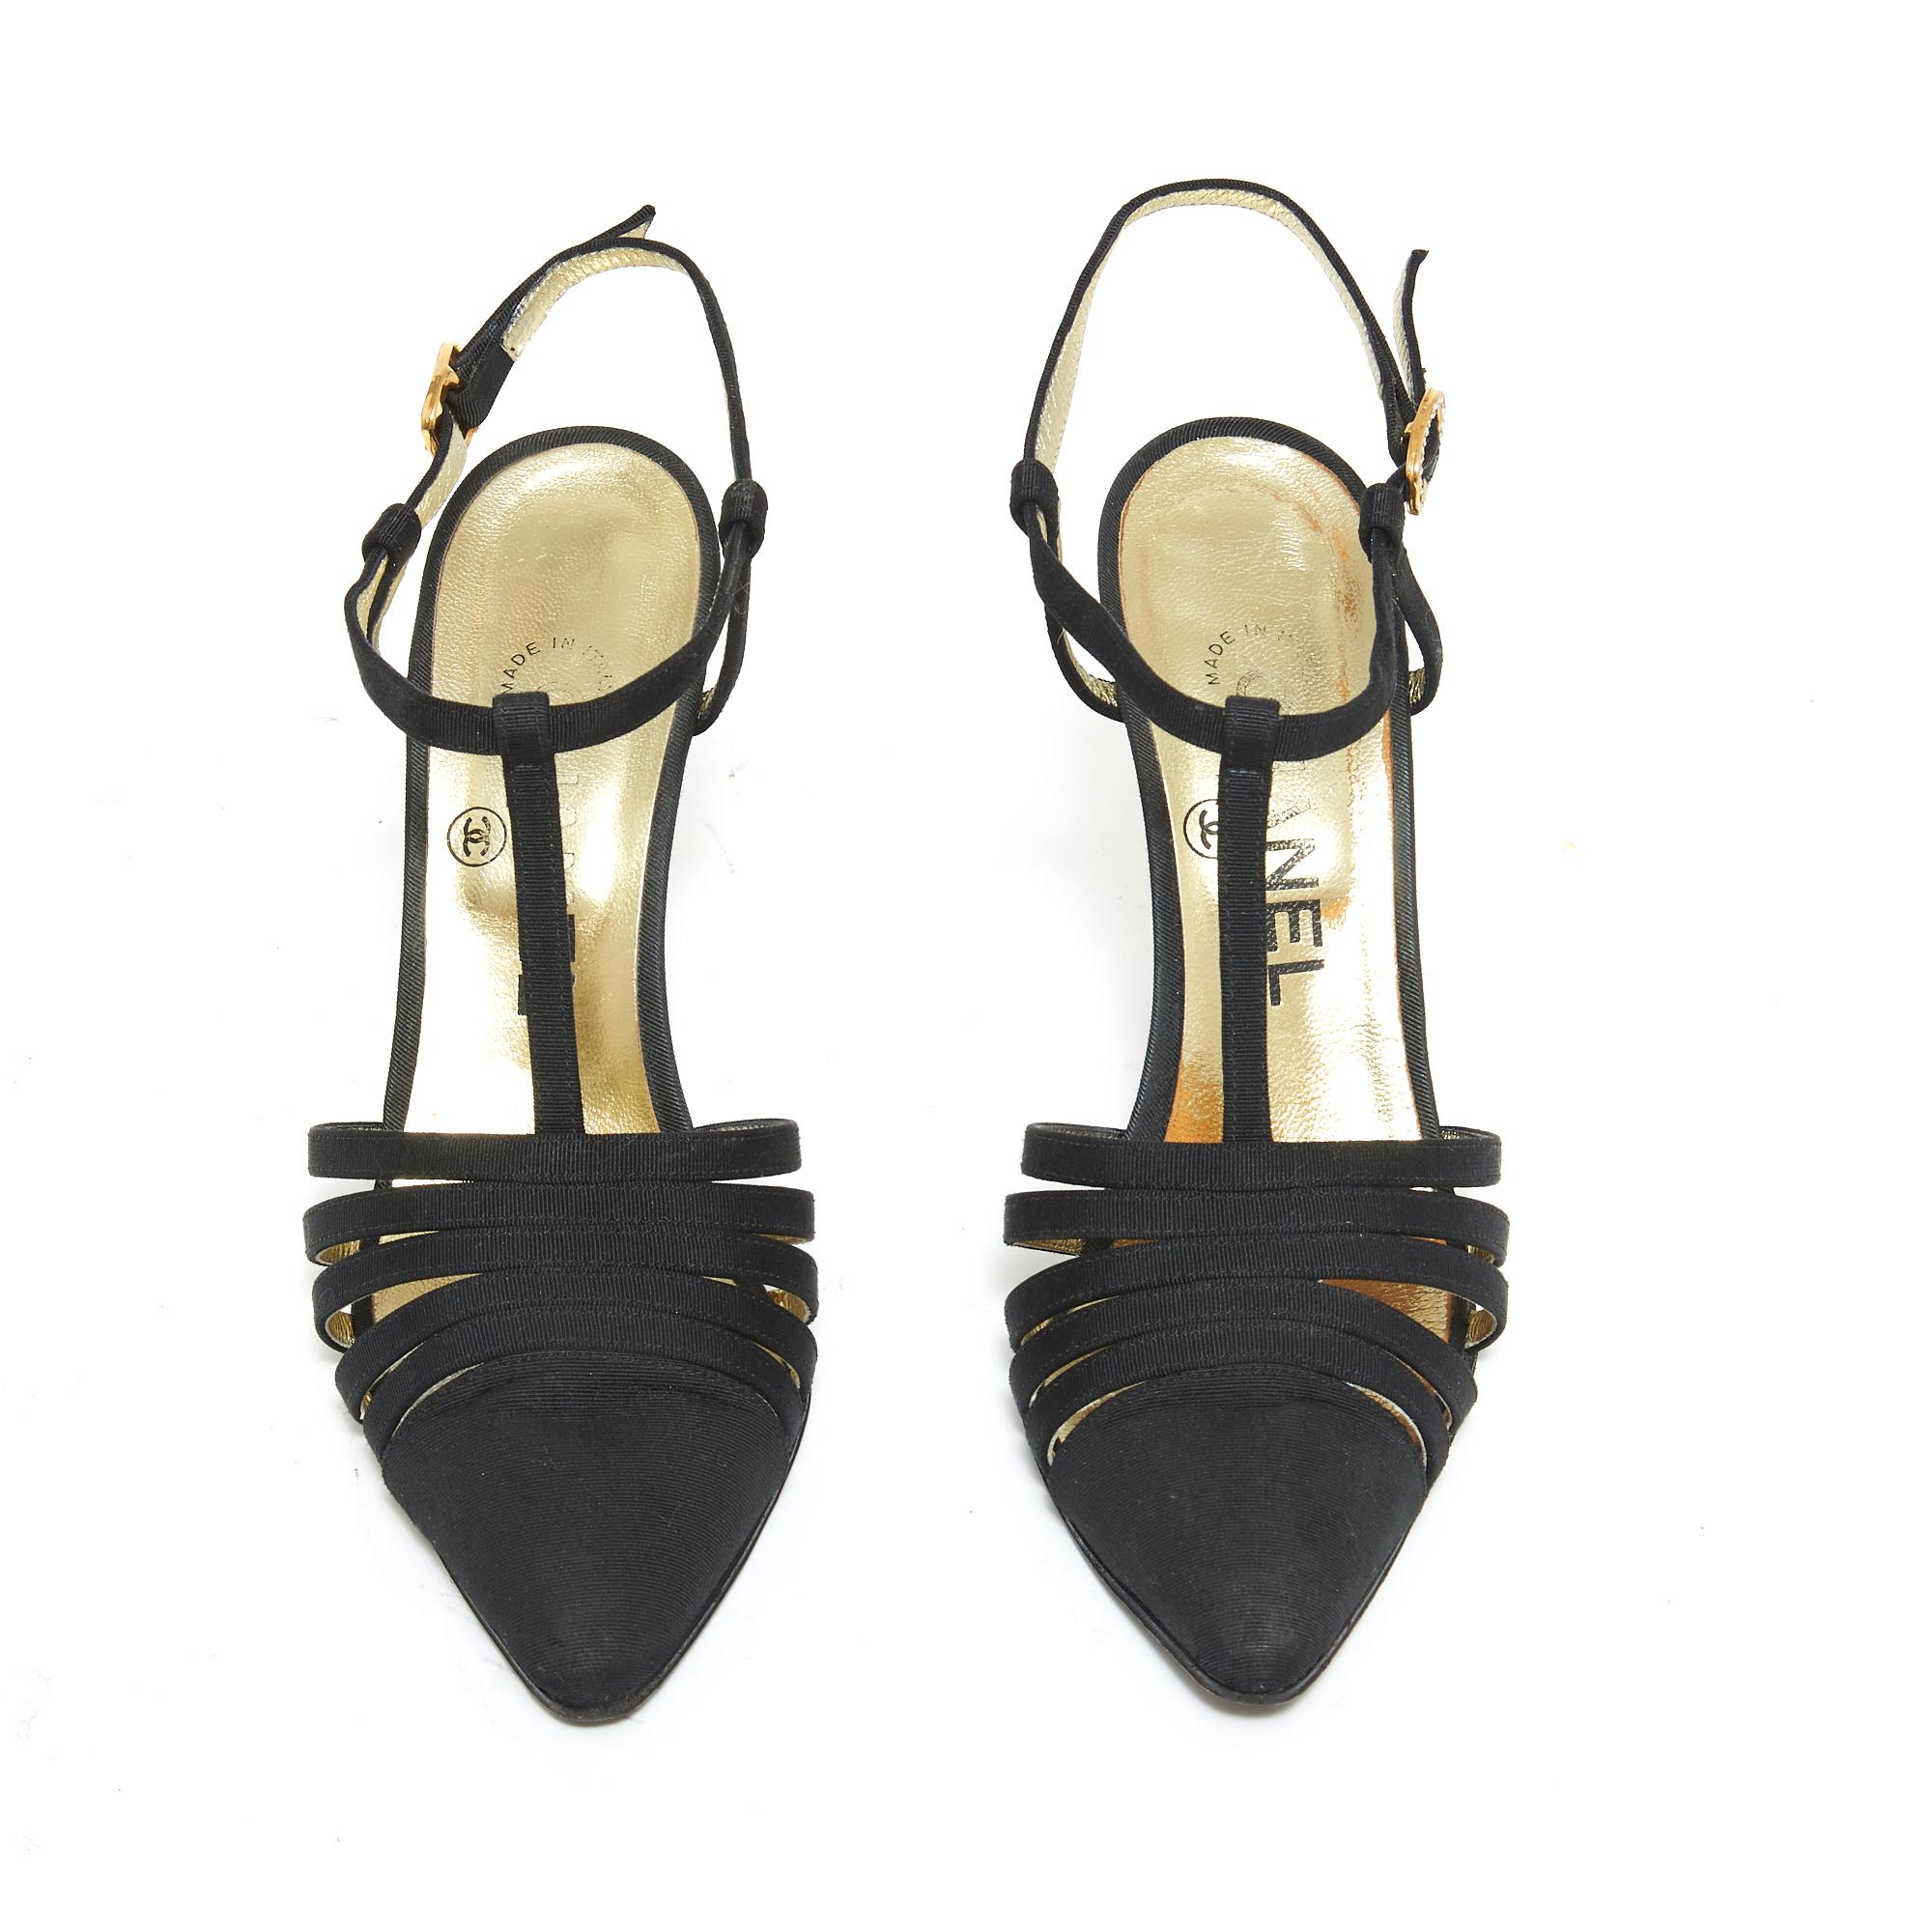 Chanel Haute Couture Pumps aus schwarzem Canvas (Ottomane), Salomé-Typ, mit feinen Riemchen, goldener Metallschnalle mit Strasssteinchen besetzt. Größe 37FR: Absatz 9 cm, Innensohle 23,7 cm. Die Schuhe sind wahrscheinlich vintage, die rechte hintere